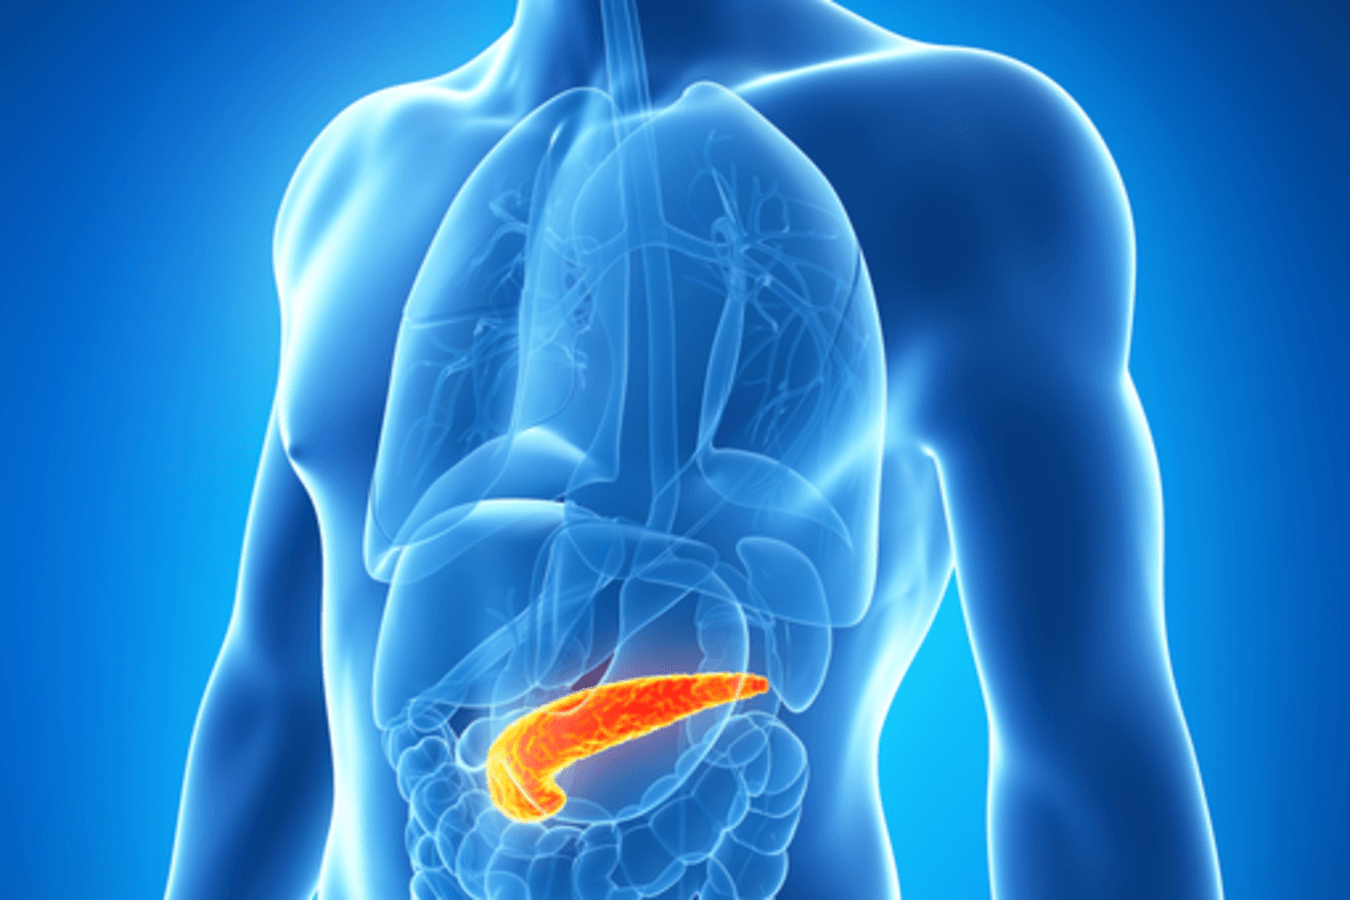 Fístula pancreática: una complicación temida. Experiencia en una unidad de cirugía hepatobiliopancreática de cuarto nivel